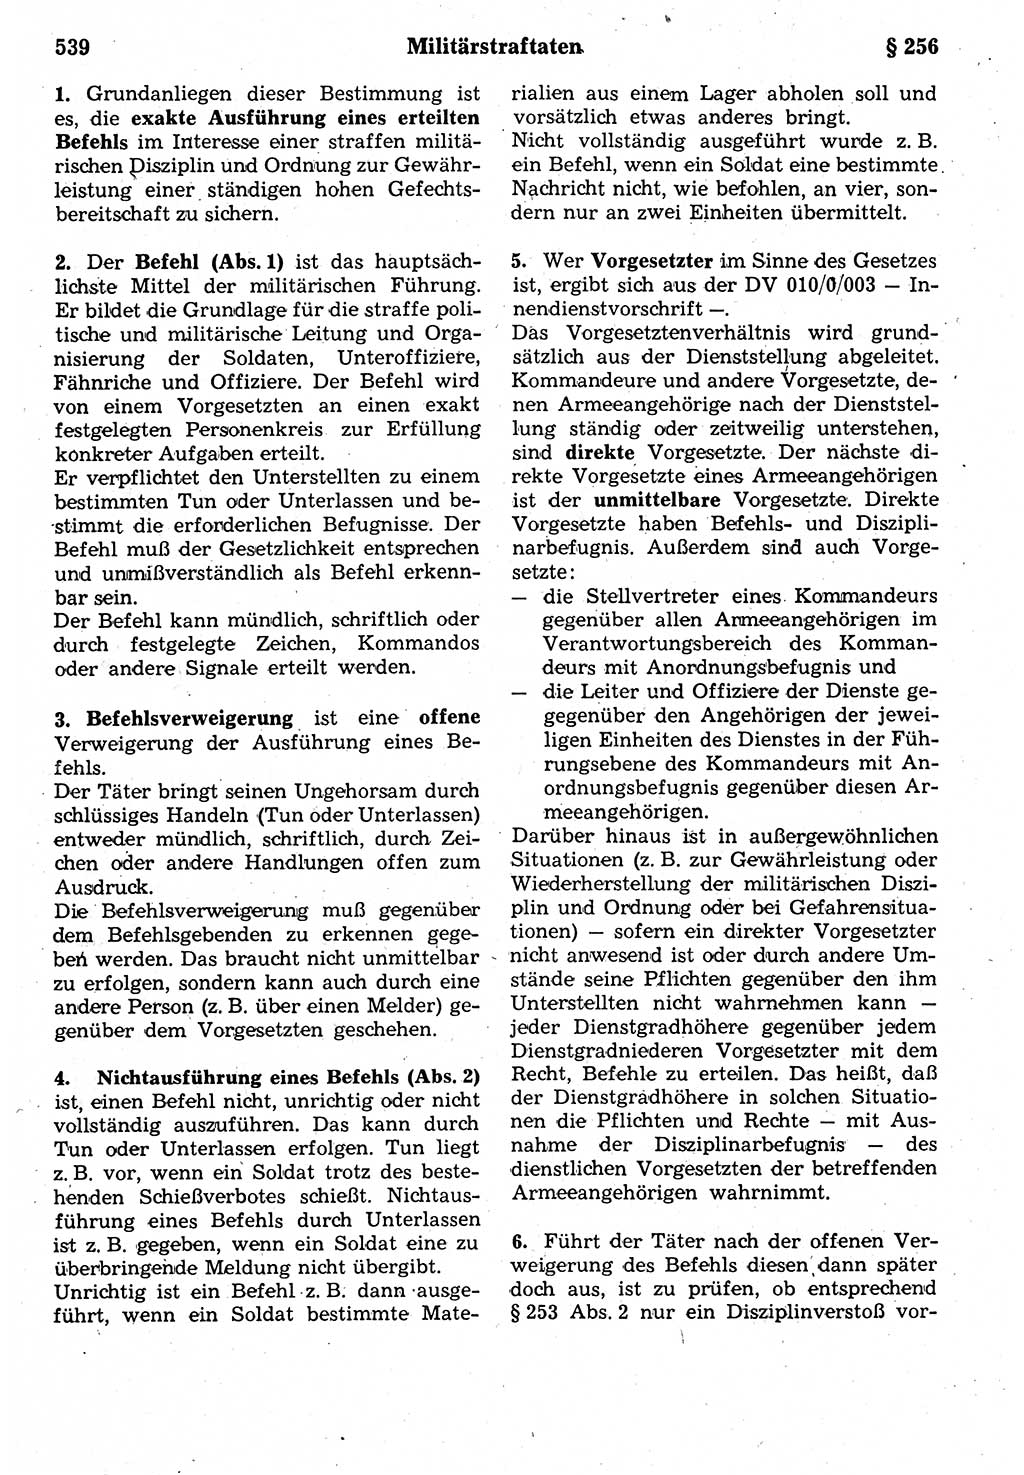 Strafrecht der Deutschen Demokratischen Republik (DDR), Kommentar zum Strafgesetzbuch (StGB) 1987, Seite 539 (Strafr. DDR Komm. StGB 1987, S. 539)